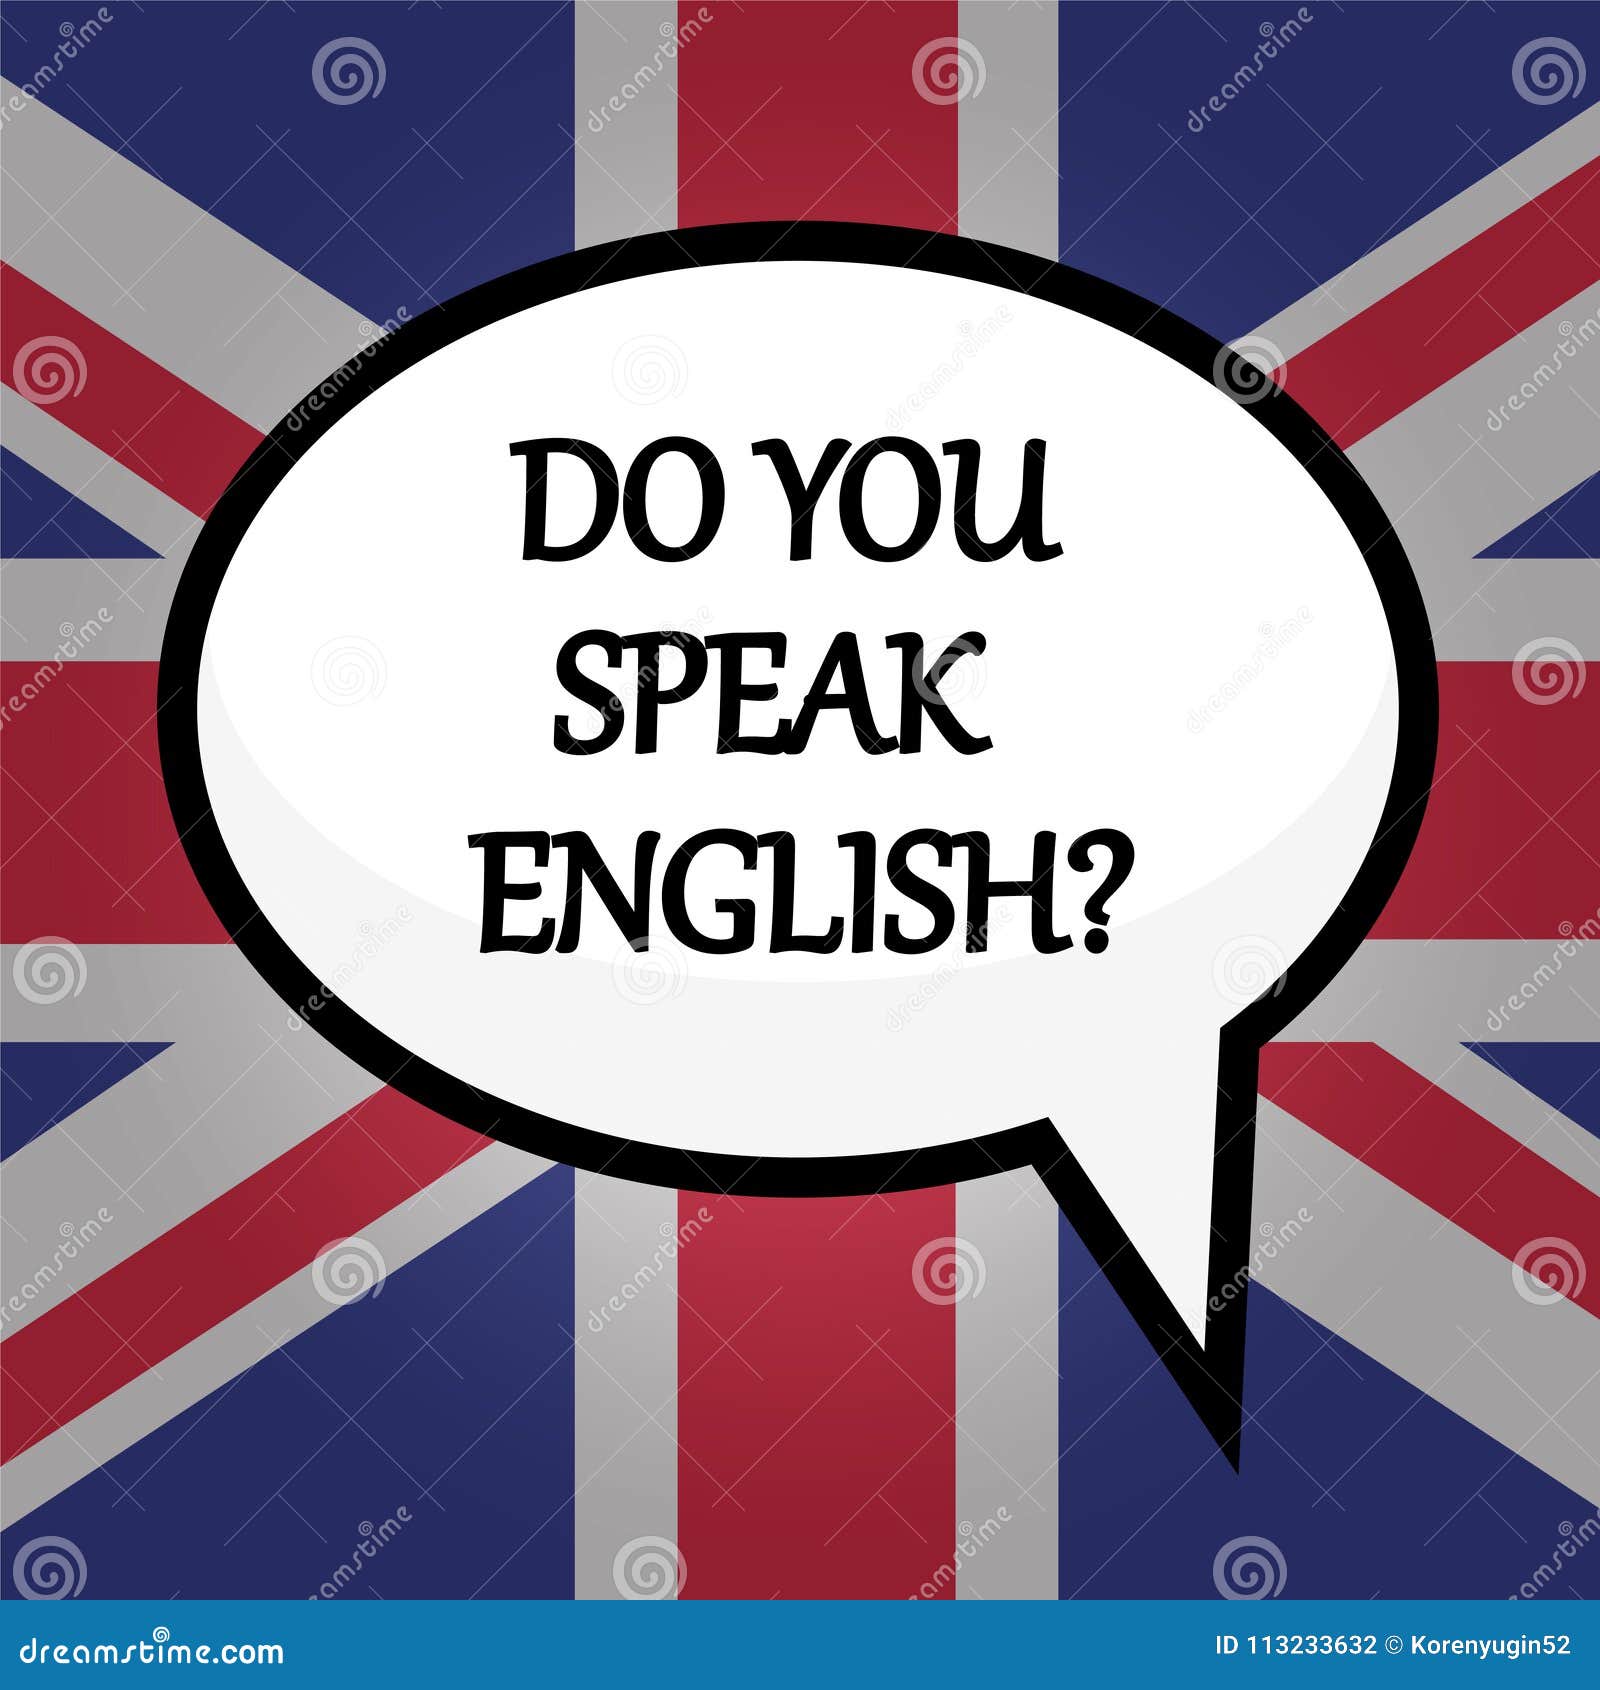 Do you speak english with me. Do you speak English. Let's speak English. Speak English надпись. Плакат do you speak English.